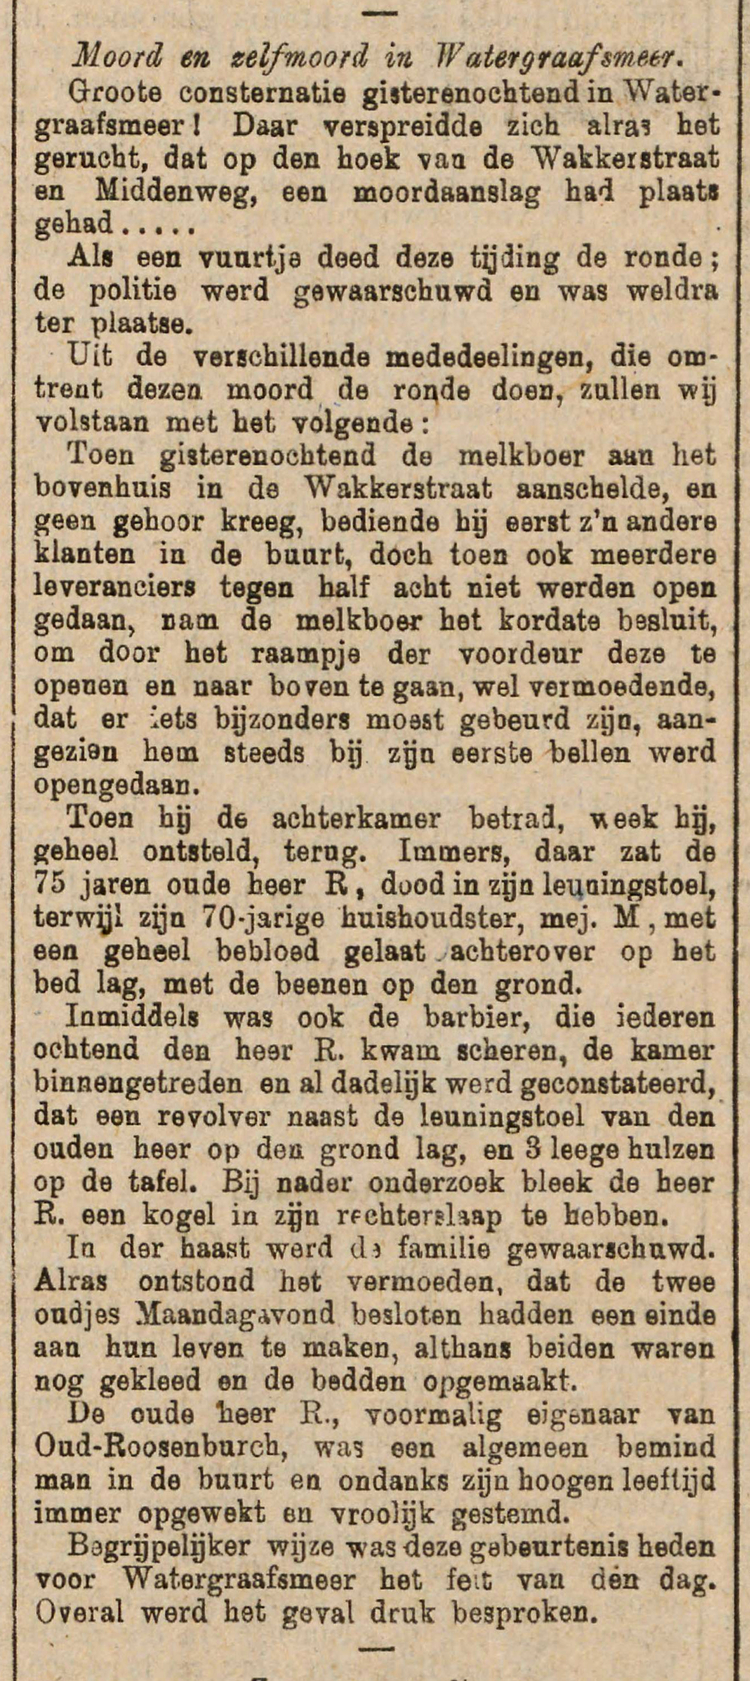 29 april 1908 - Moord en zelfmoord in de Watergraafsmeer  